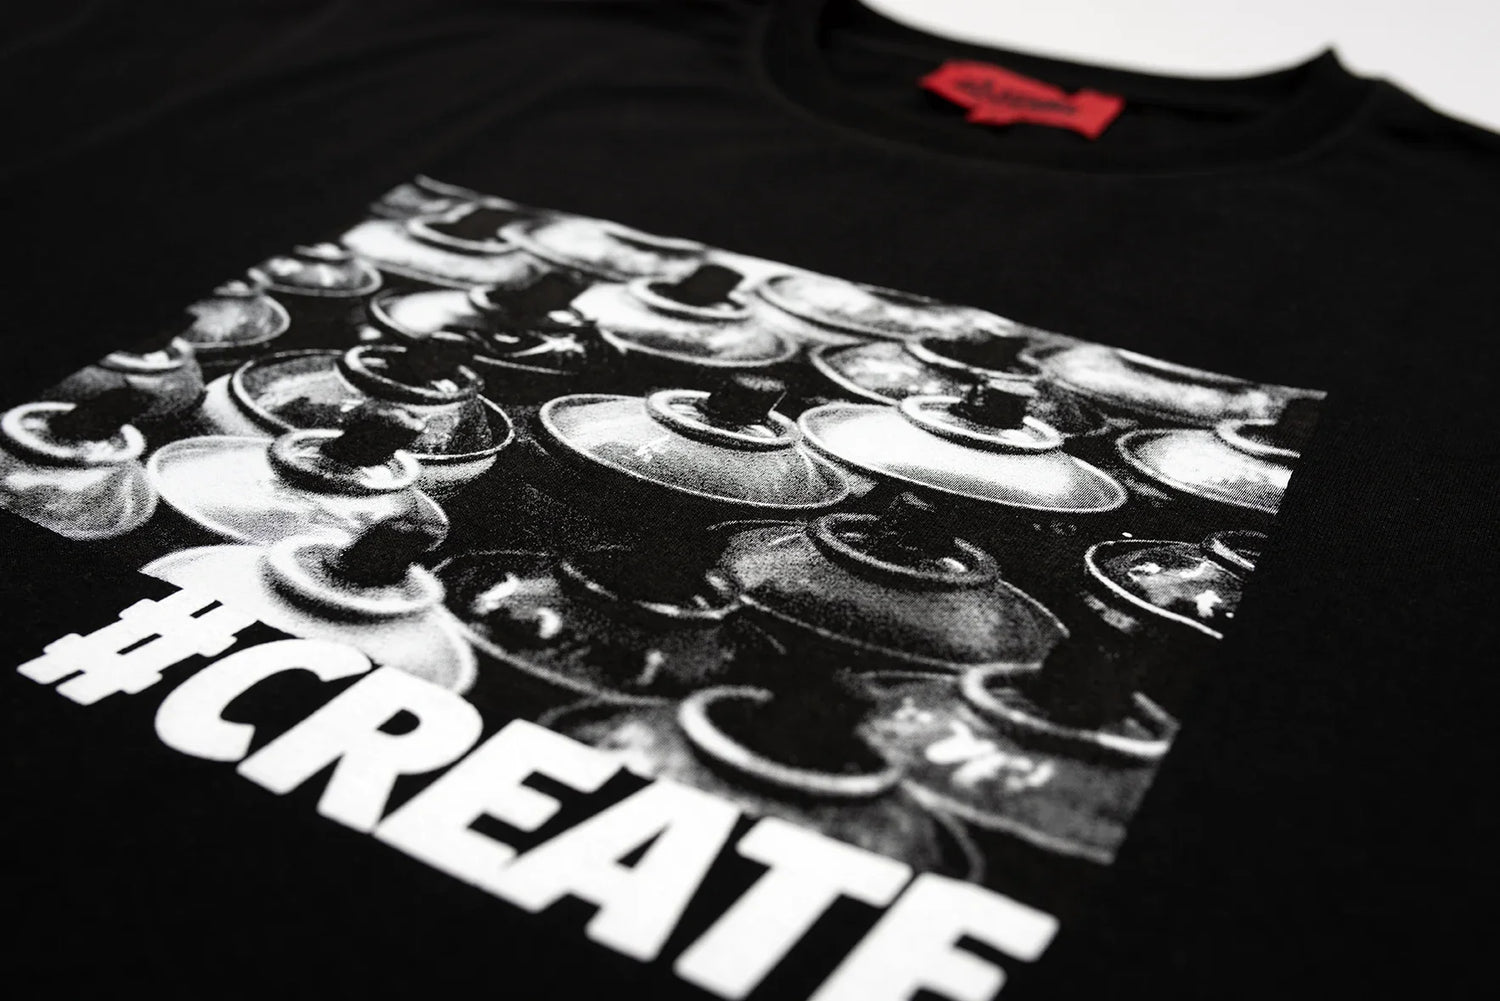 T-shirt Create - Noir -h